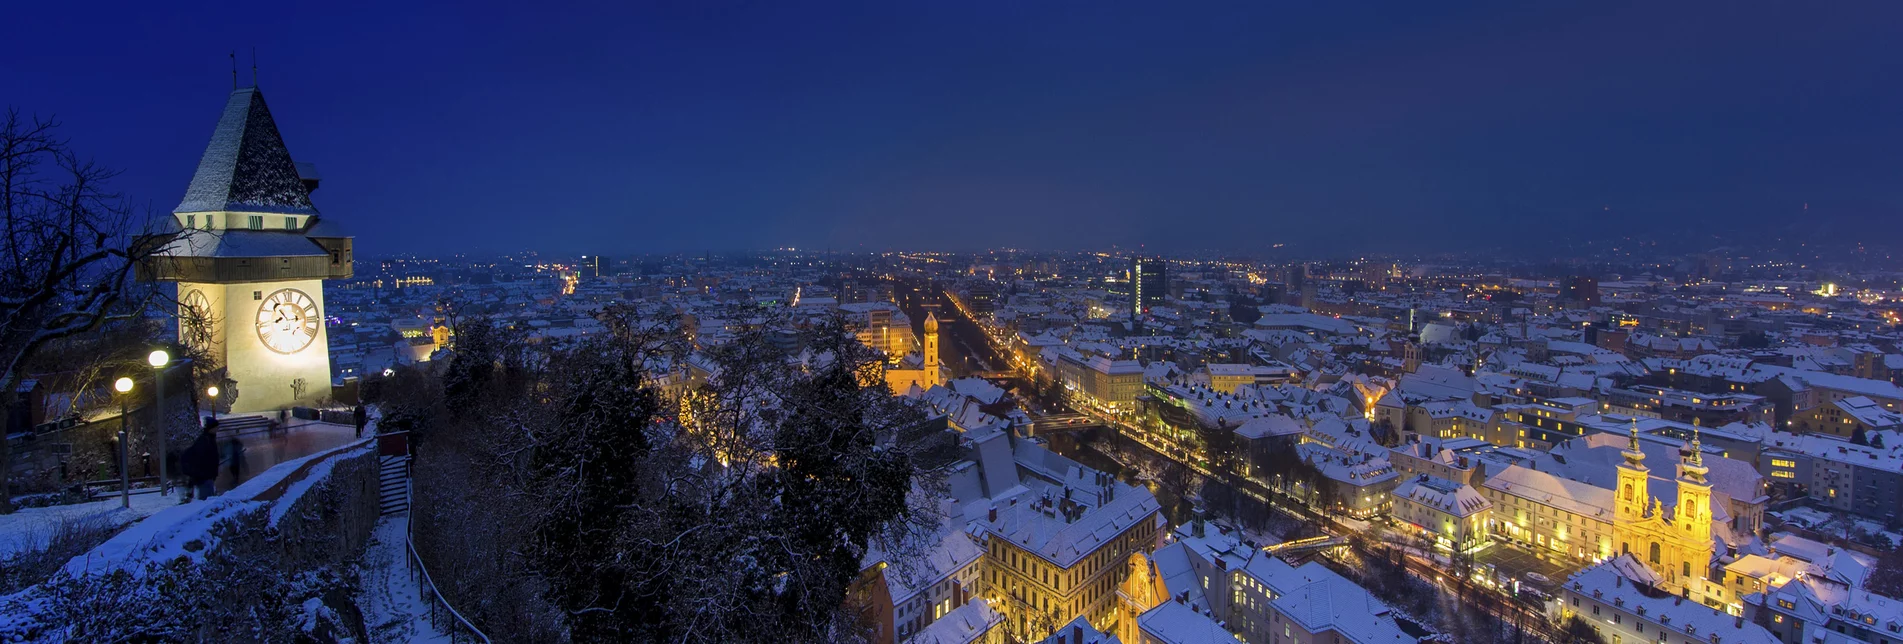 Schlossberg-Blick auf die winterliche Stadt Graz | © Steiermark Tourismus | Harry Schiffer